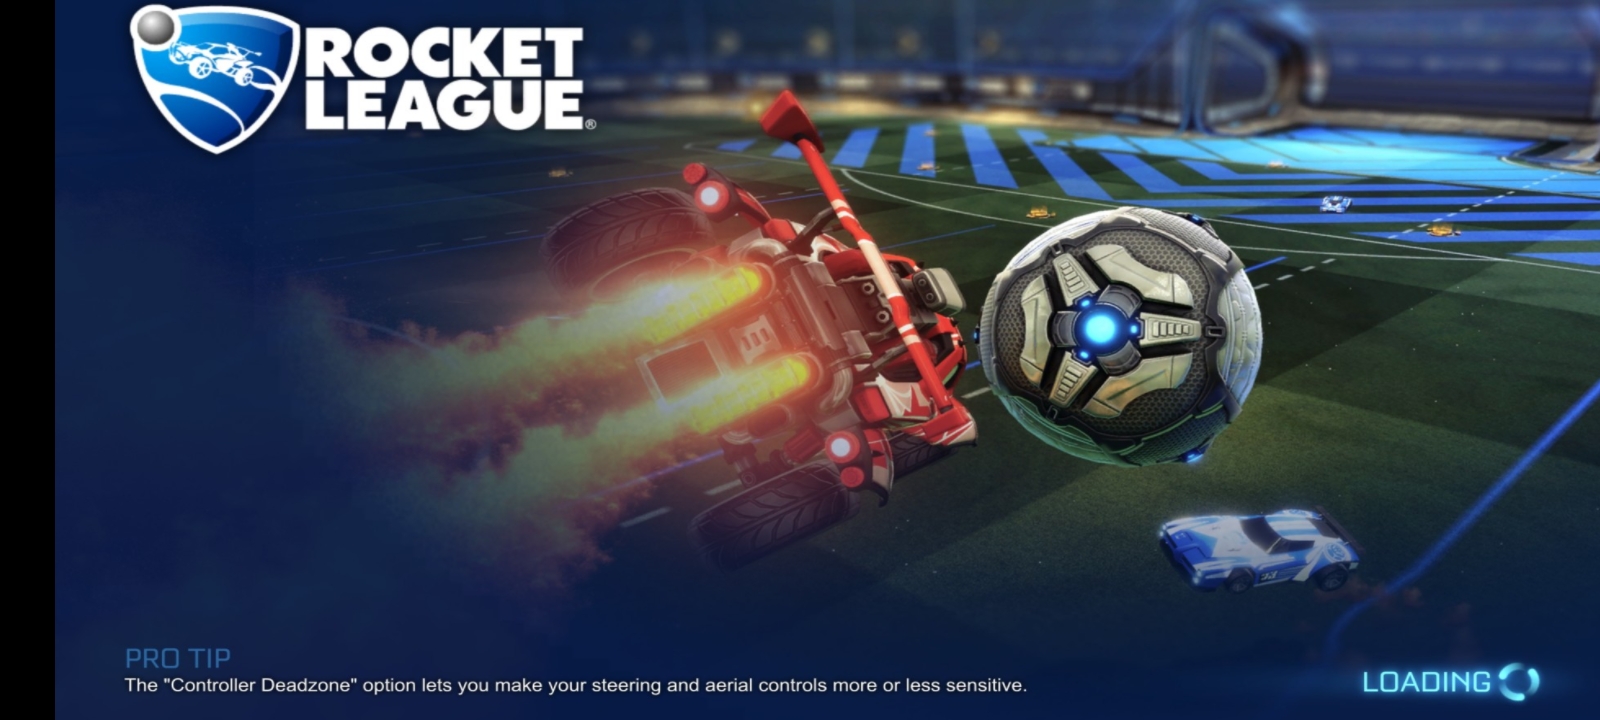 rocket league 2d fangame unblocked